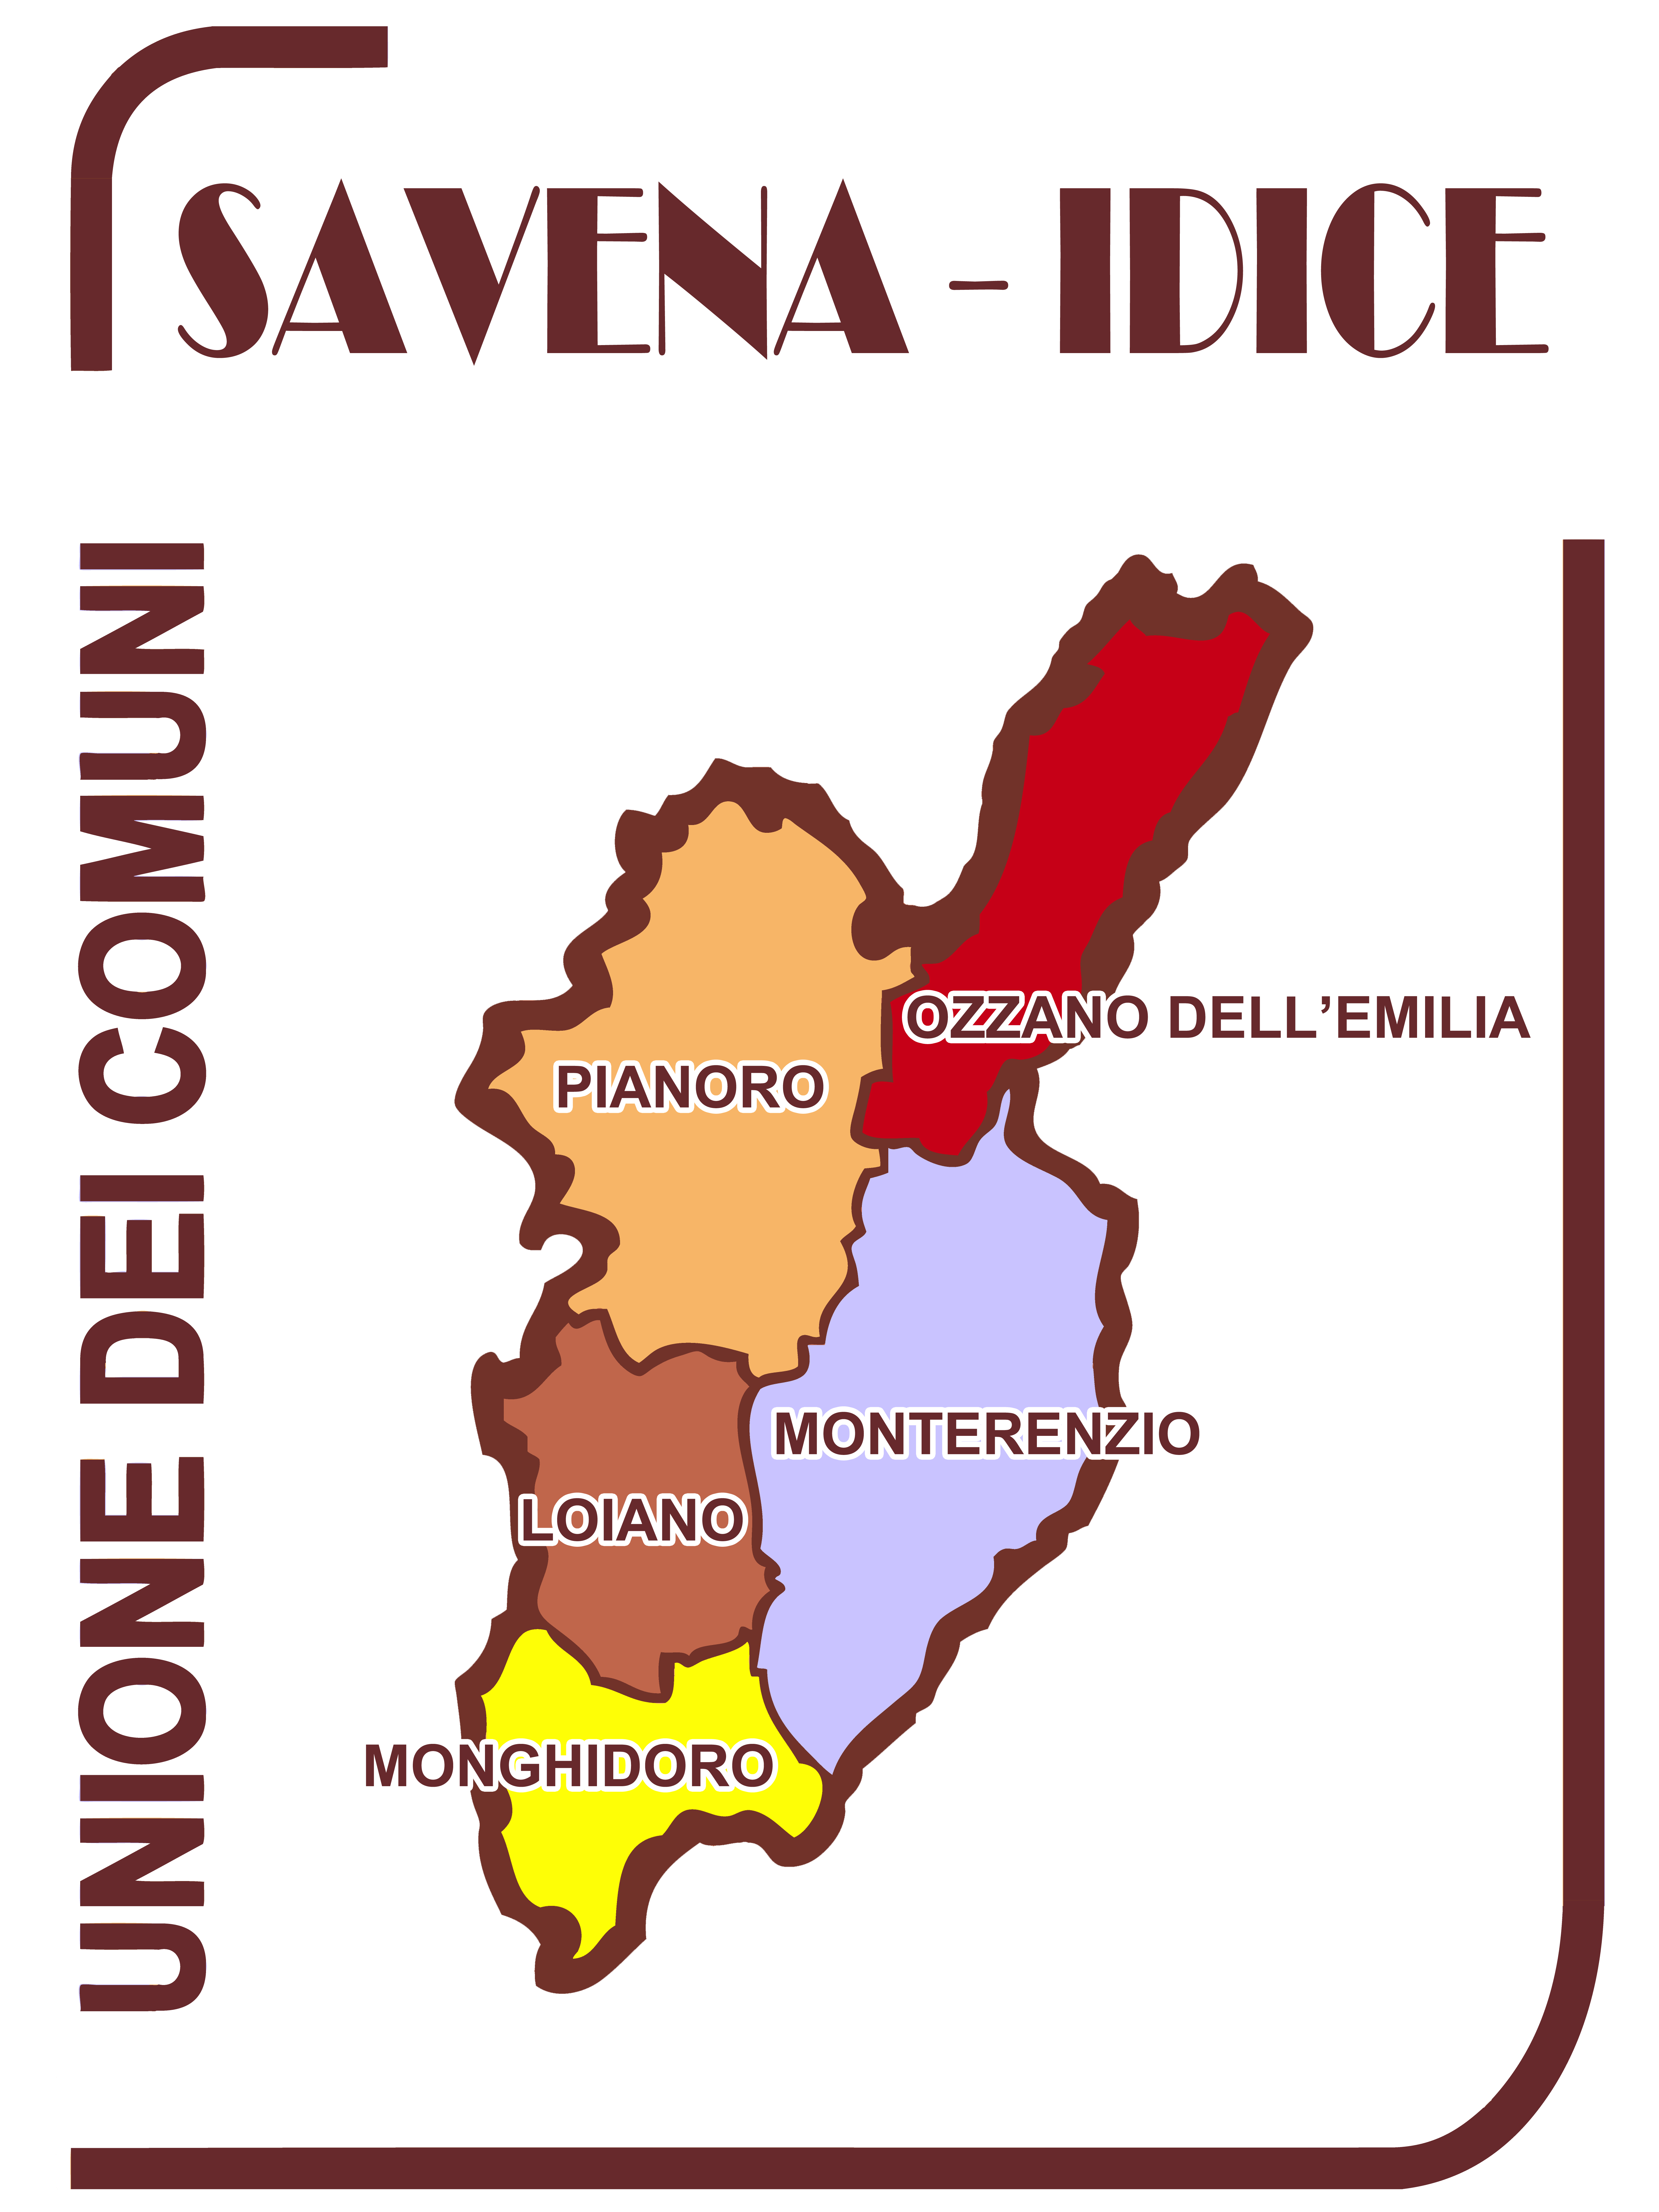 Logo Unione dei Comuni Savena-Idice